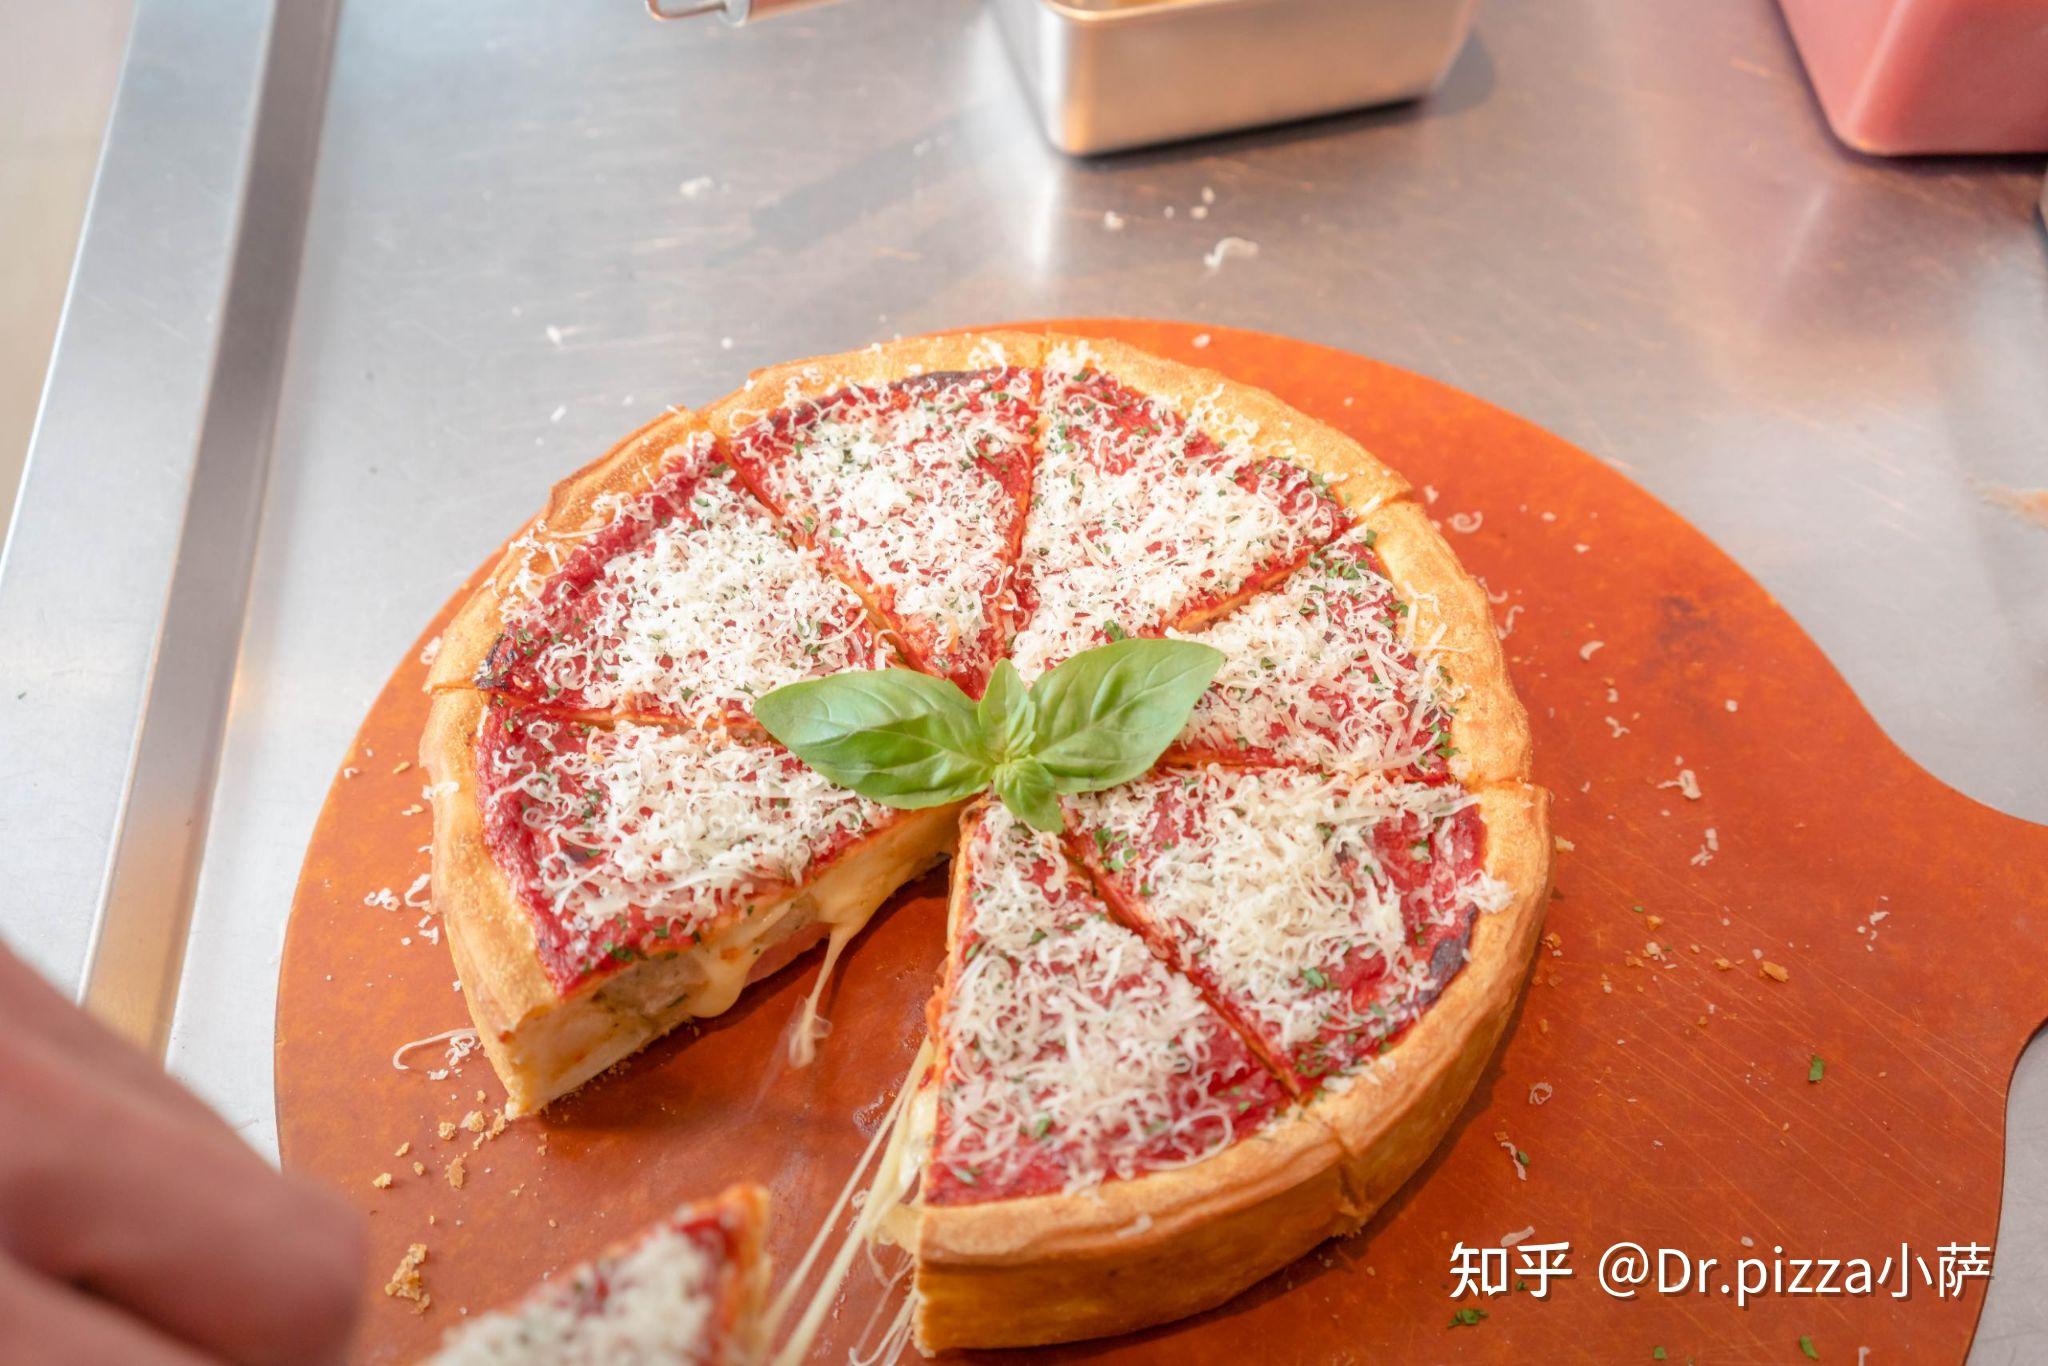 盘点2021年意大利人最爱的十种披萨口味 - 美食 - 丽意生活-国内首家倡导意大利生活方式的时尚网站